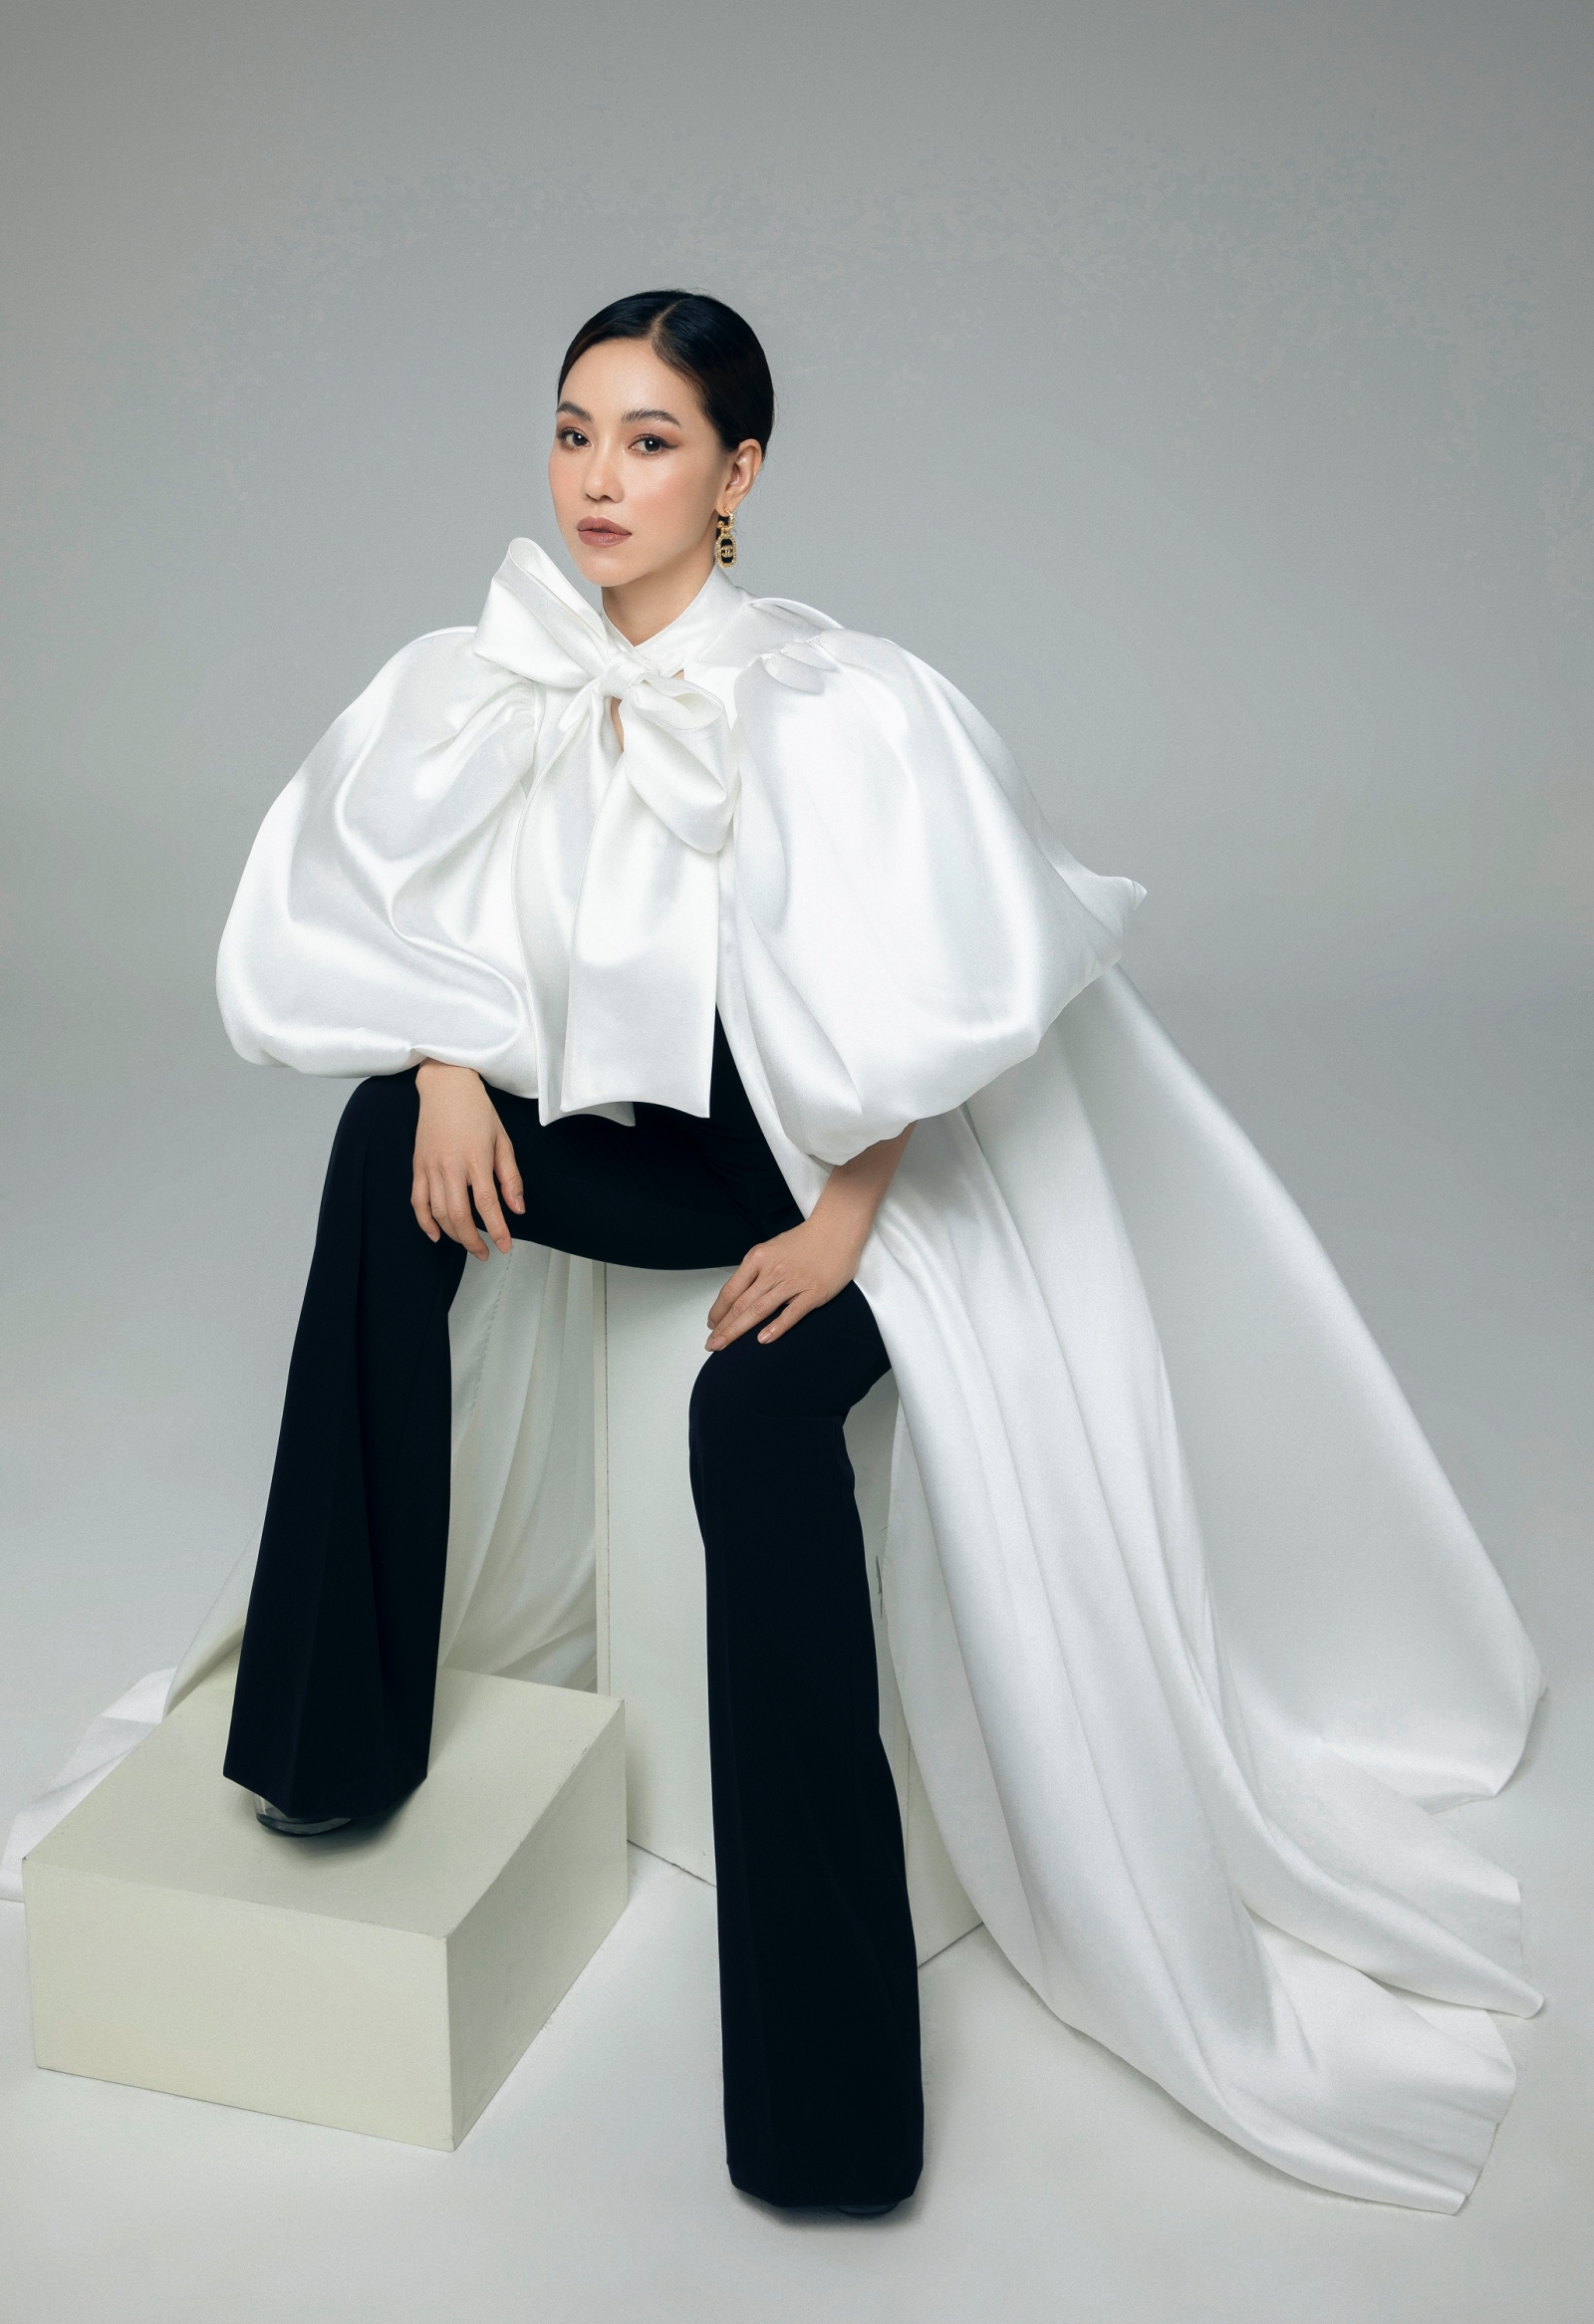 Ngôi sao - Bà trùm Hoa hậu Phạm Kim Dung: Những bí mật số phận và góc khuất 